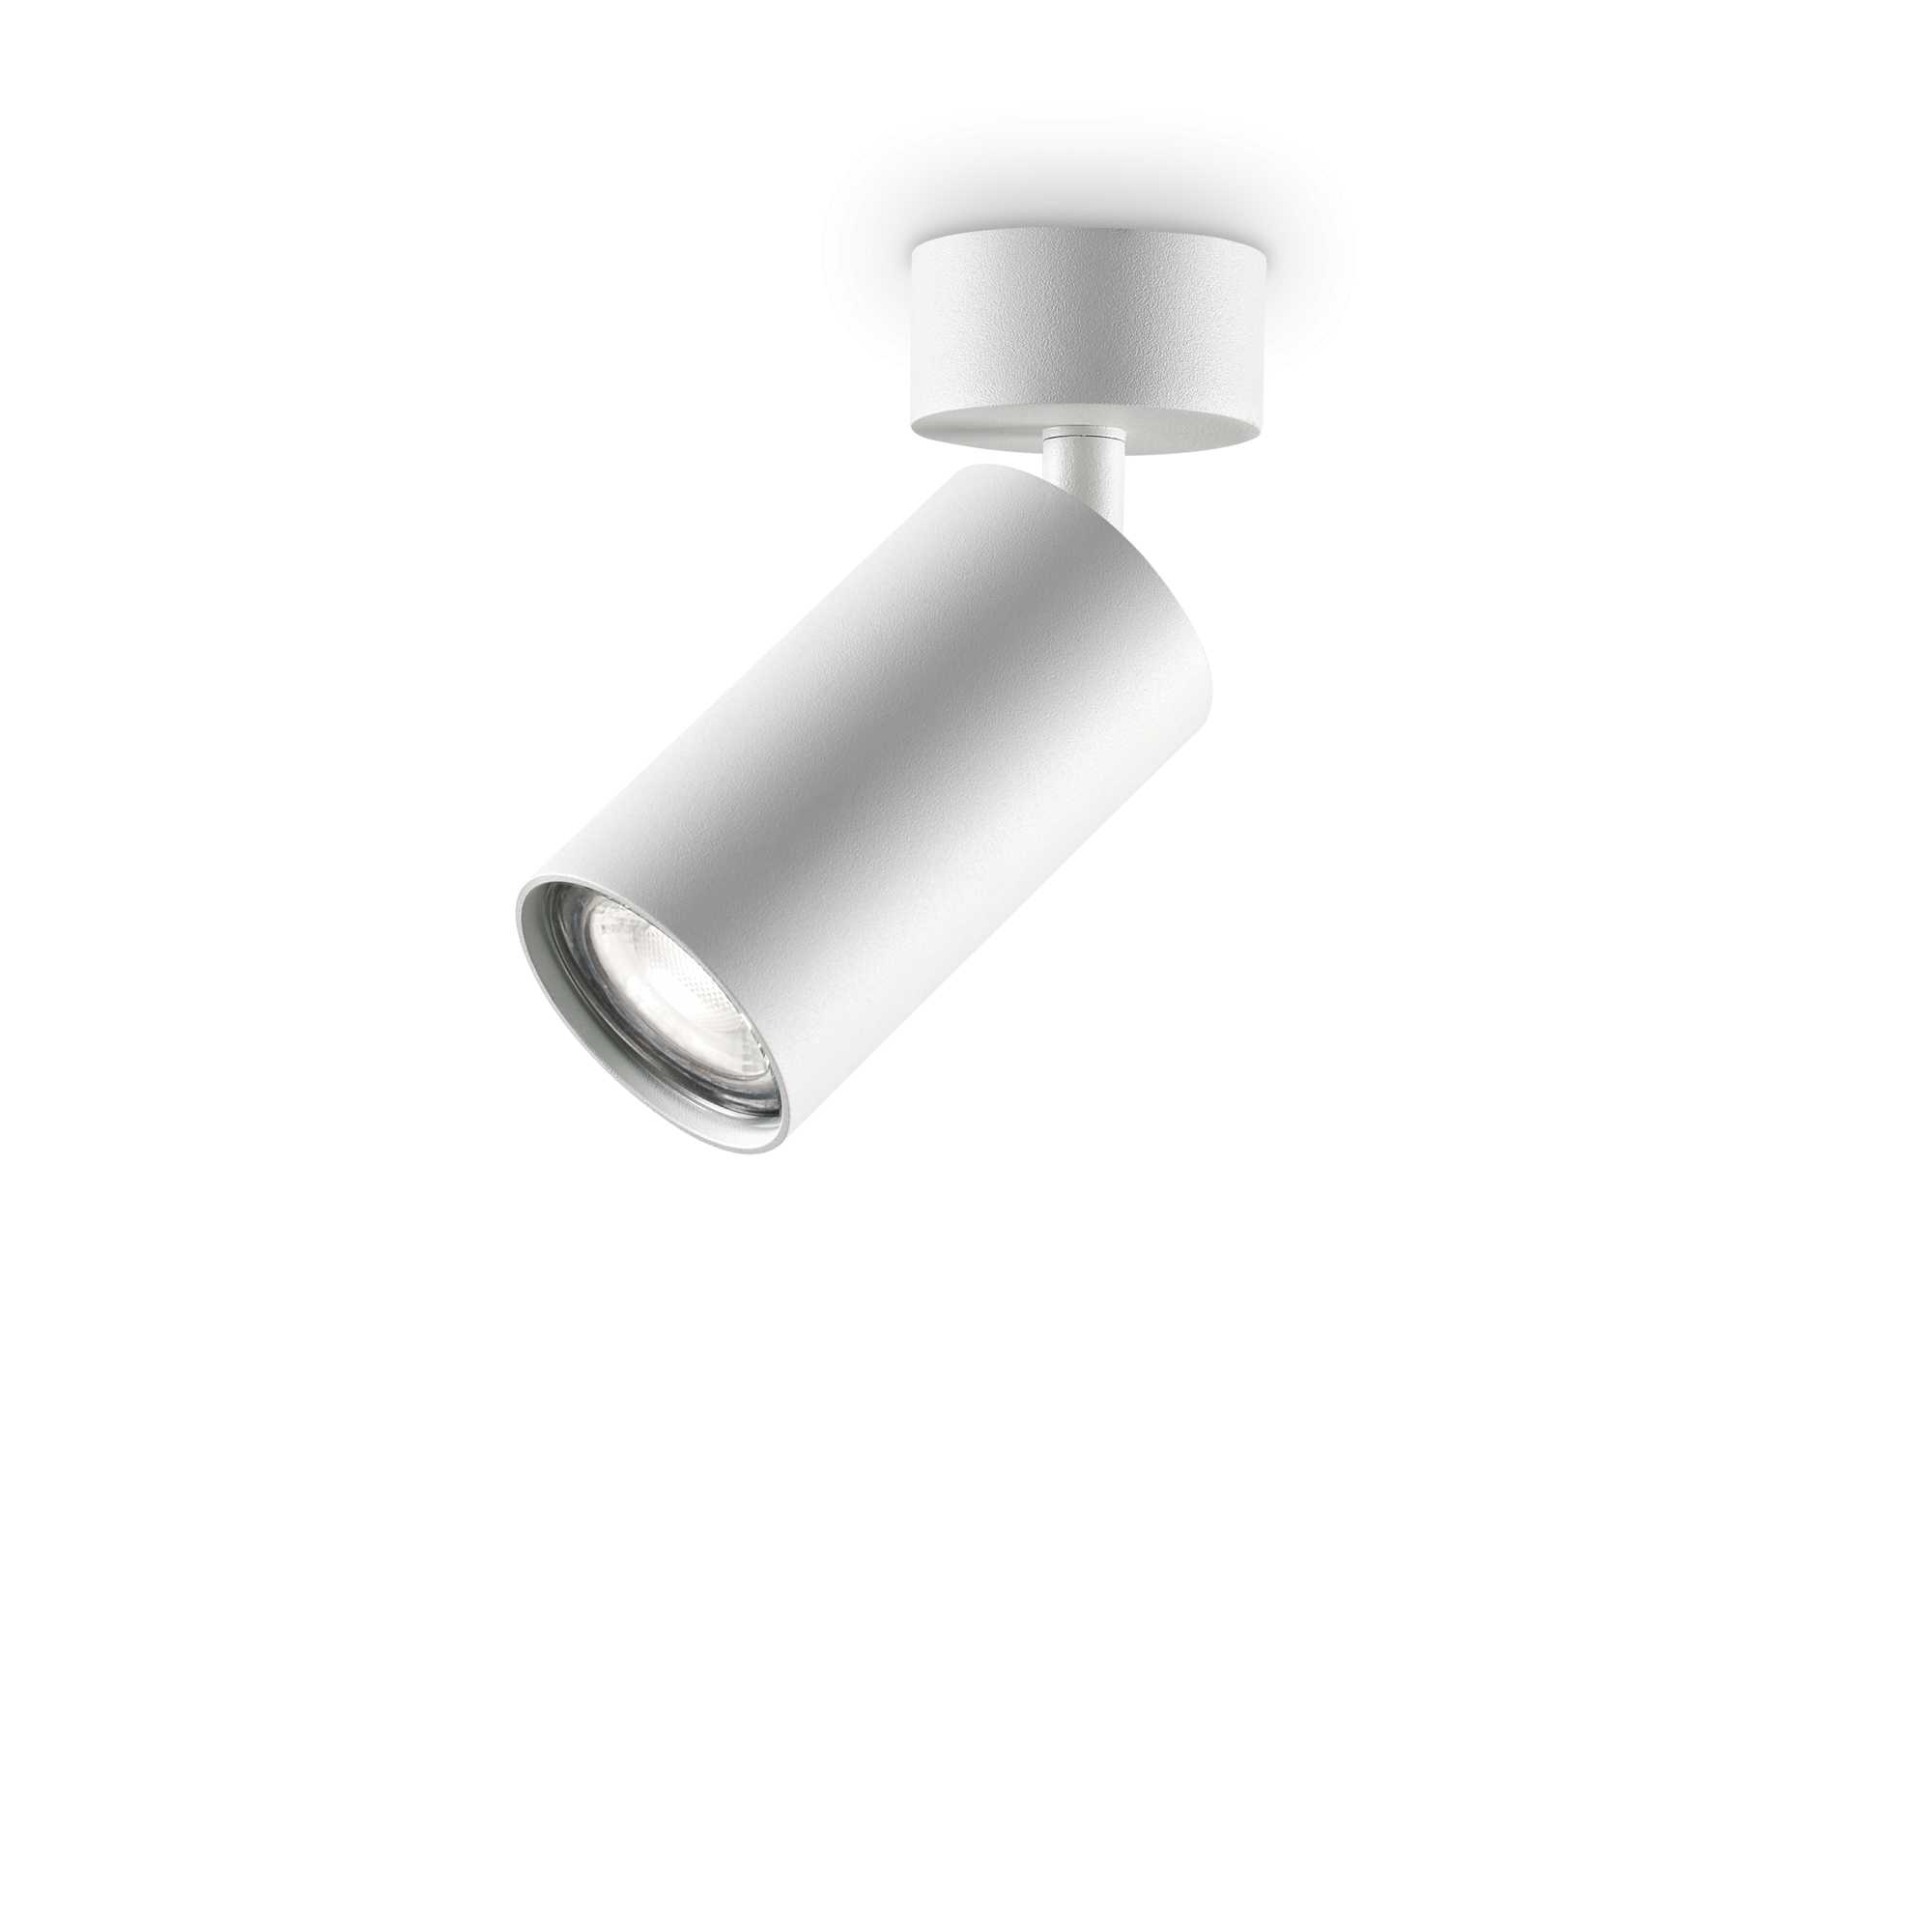 AD hotelska oprema Stropne lampe Dynamite - Bijele boje slika proizvoda